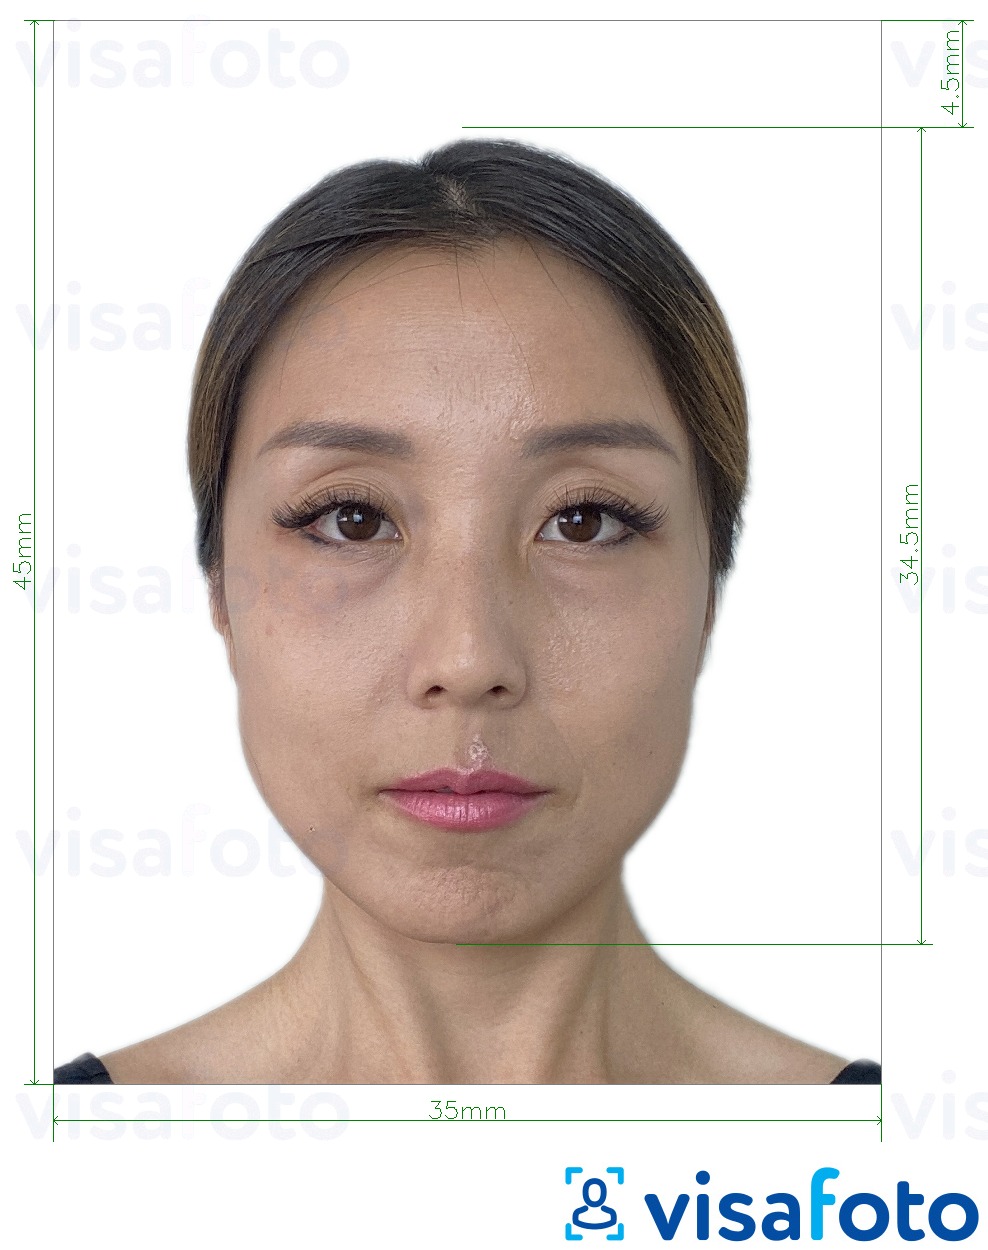 सटीक आकार विनिर्देश के साथ म्यांमार पासपोर्ट 35x45 मिमी के लिए तस्वीर का उदाहरण